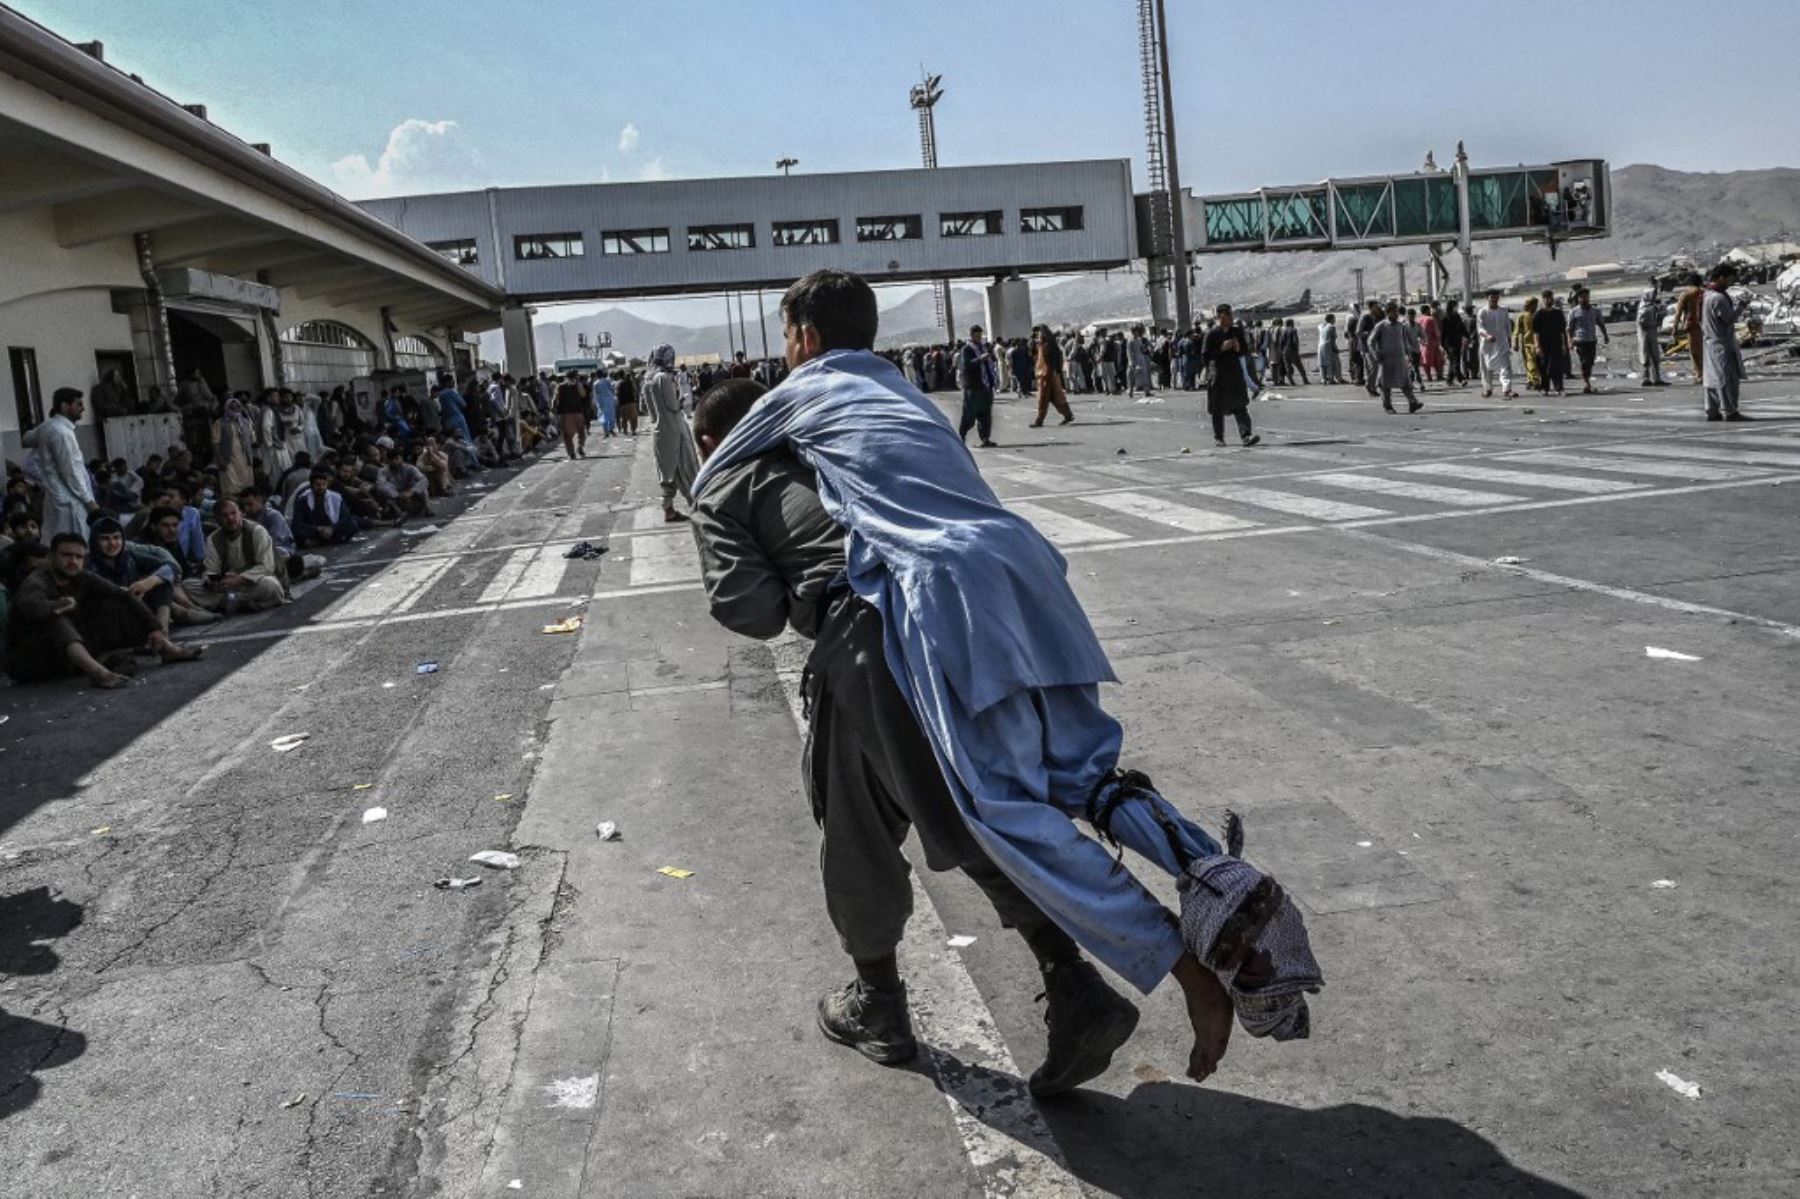 Pasajeros afganos esperan para salir del aeropuerto de Kabul después del final rápido de la guerra de 20 años de Afganistán, mientras miles de personas asaltaban el aeropuerto de la ciudad tratando de huir del temido tipo de gobierno islamista de línea dura del grupo.

Foto: AFP